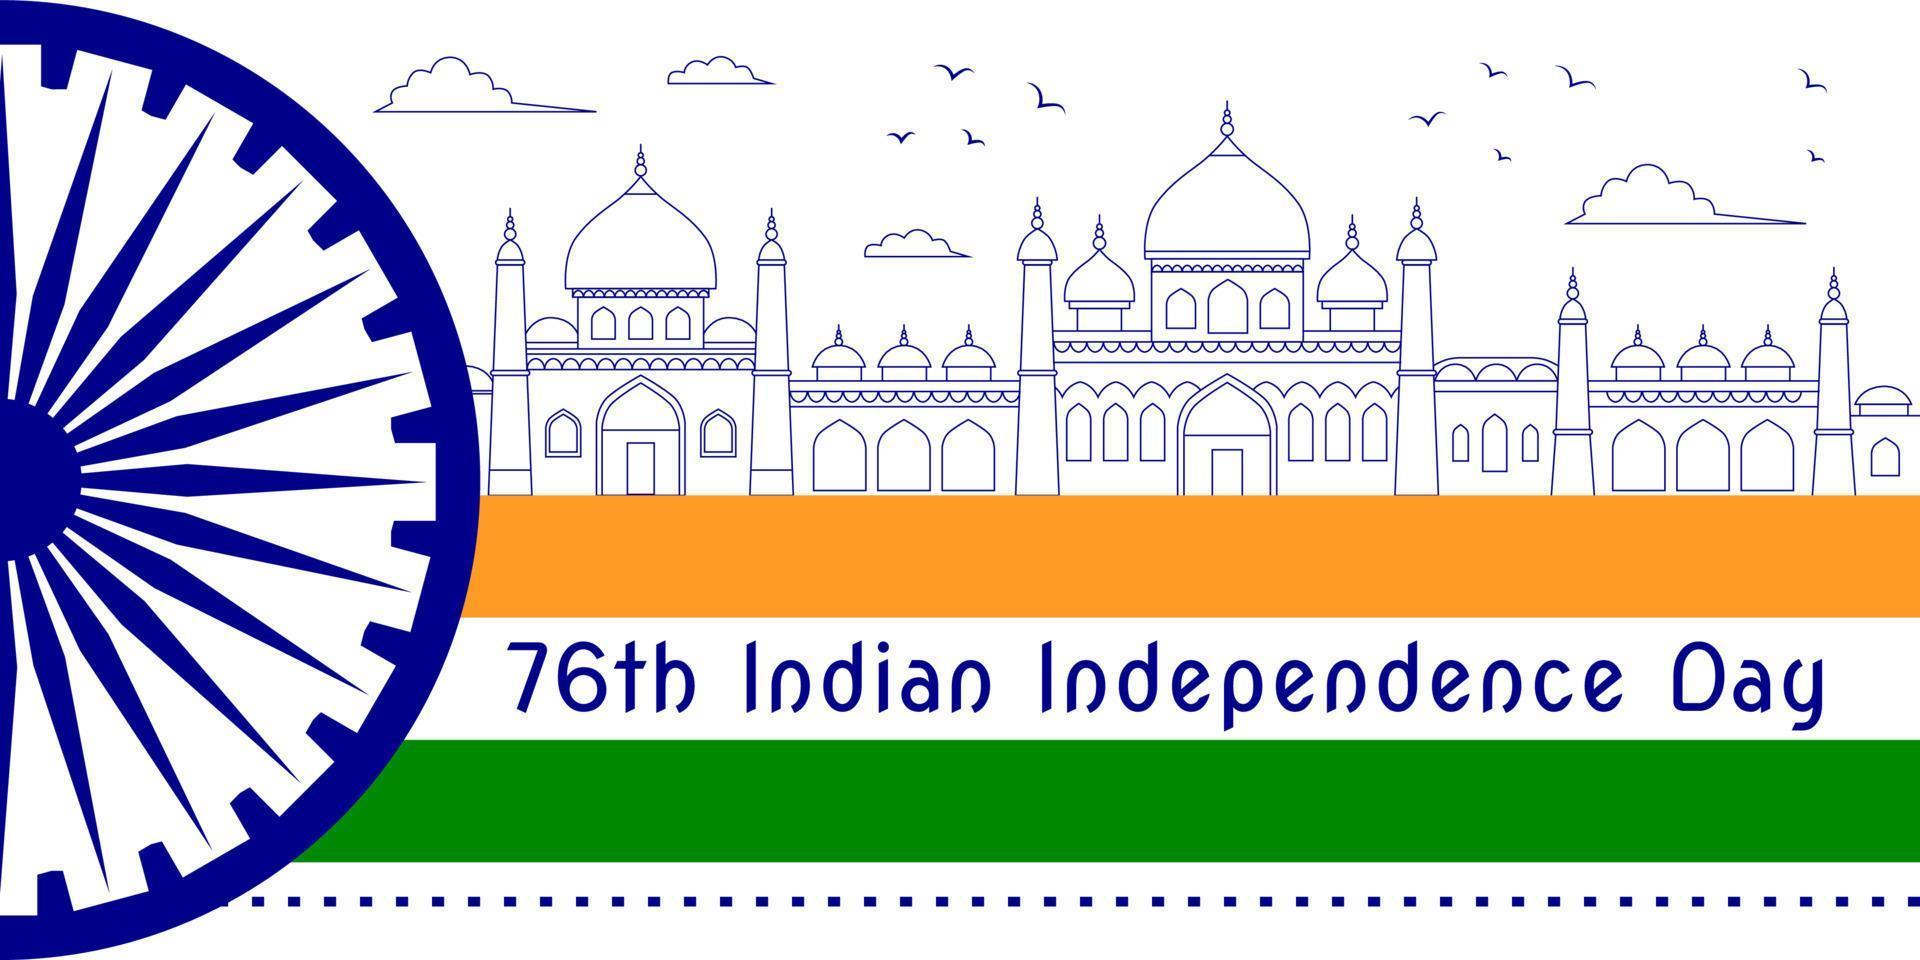 76ste Indisch onafhankelijkheid dag ansichtkaart met nationaal symbolen en lijn kunst bouwkundig tekeningen van typisch Indisch gebouwen. vector